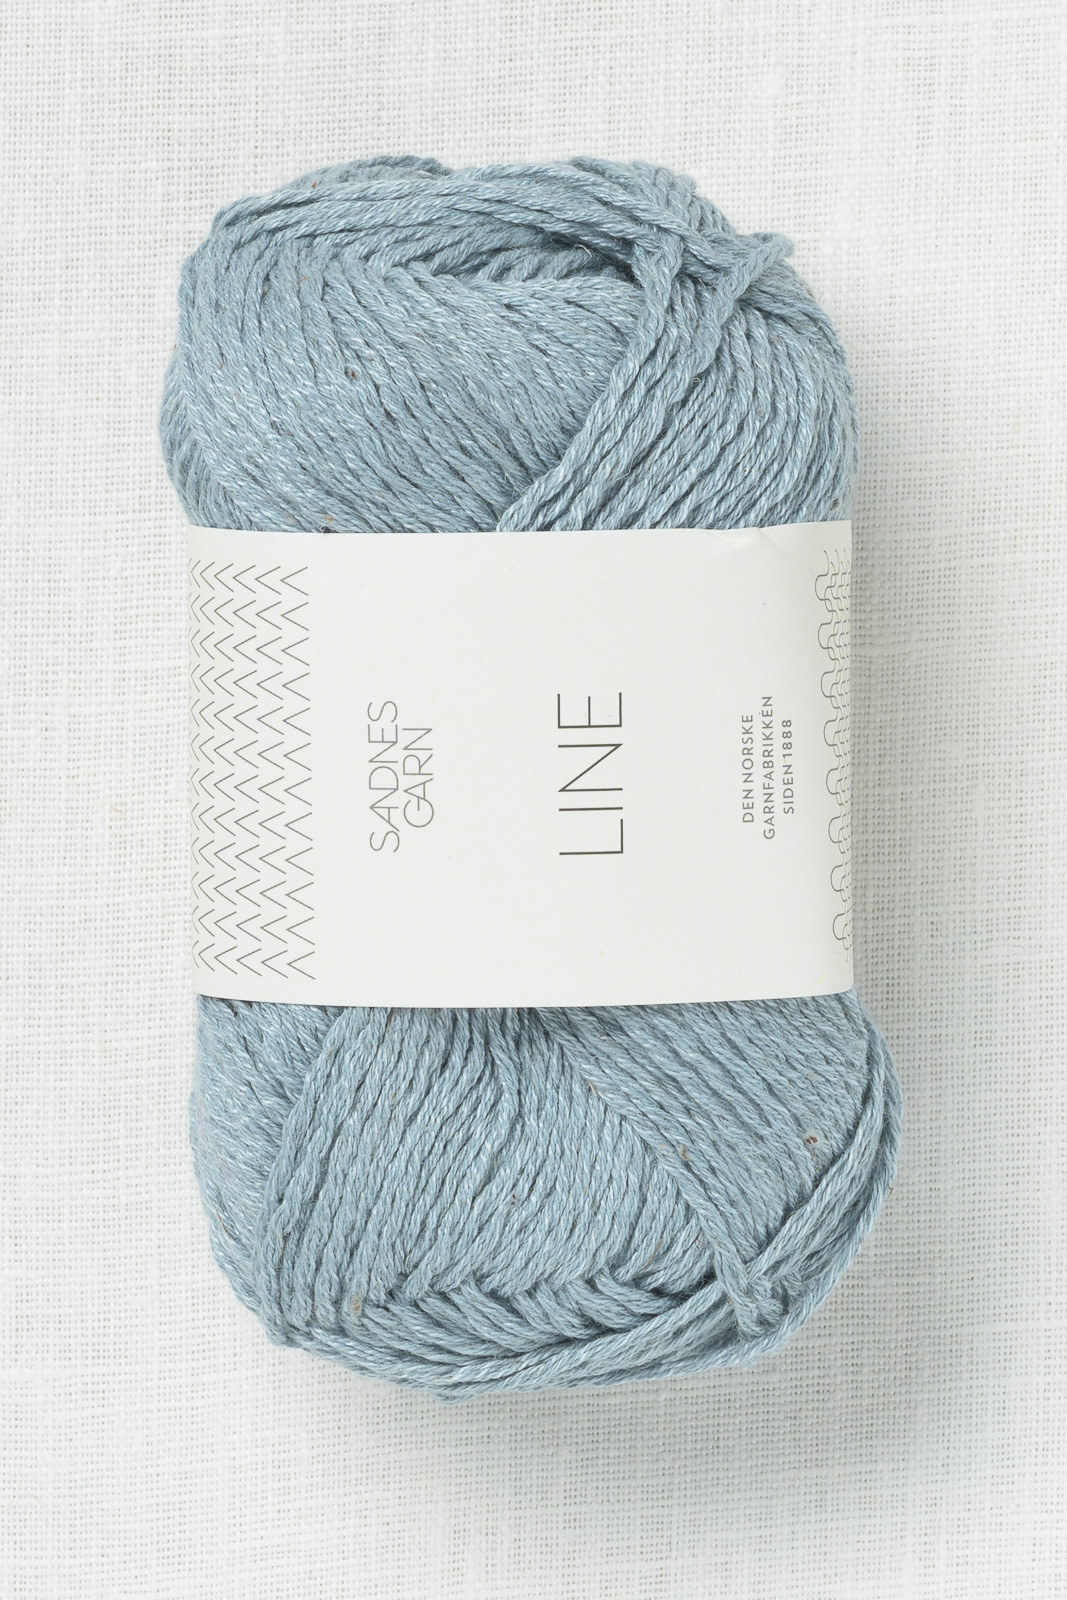 Porto Eddike build Sandnes Garn Line 6531 Ice Blue - Wool and Company Fine Yarn